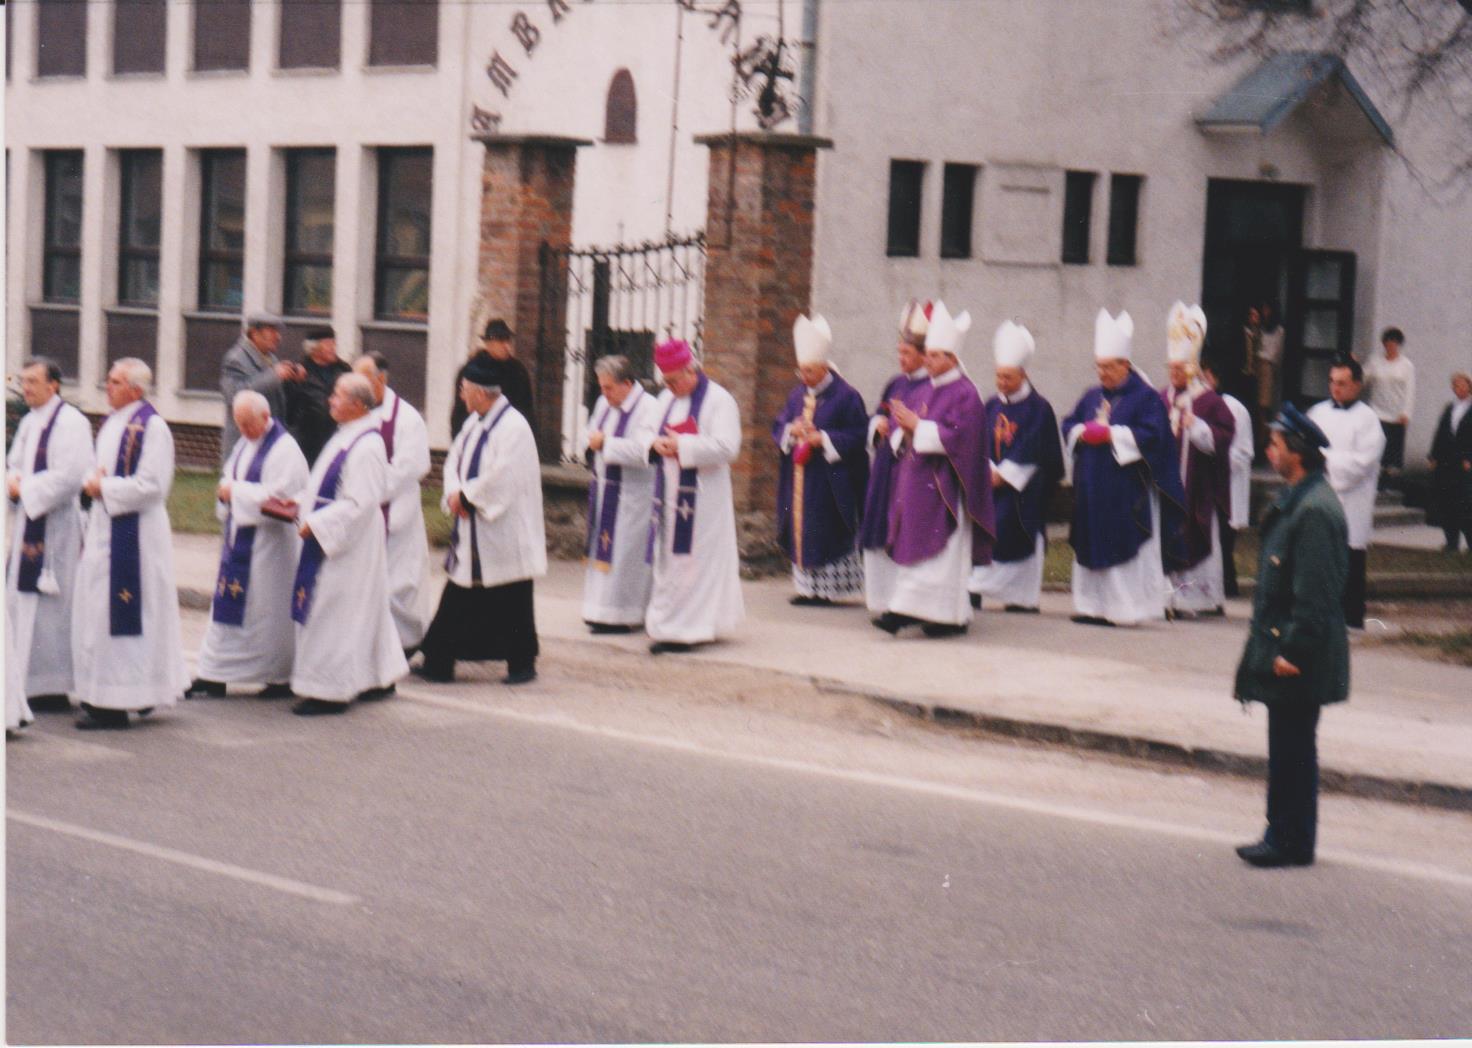 Slávnosť pri príležitosti stého výročia narodenia biskupa Ambróza Lazíka